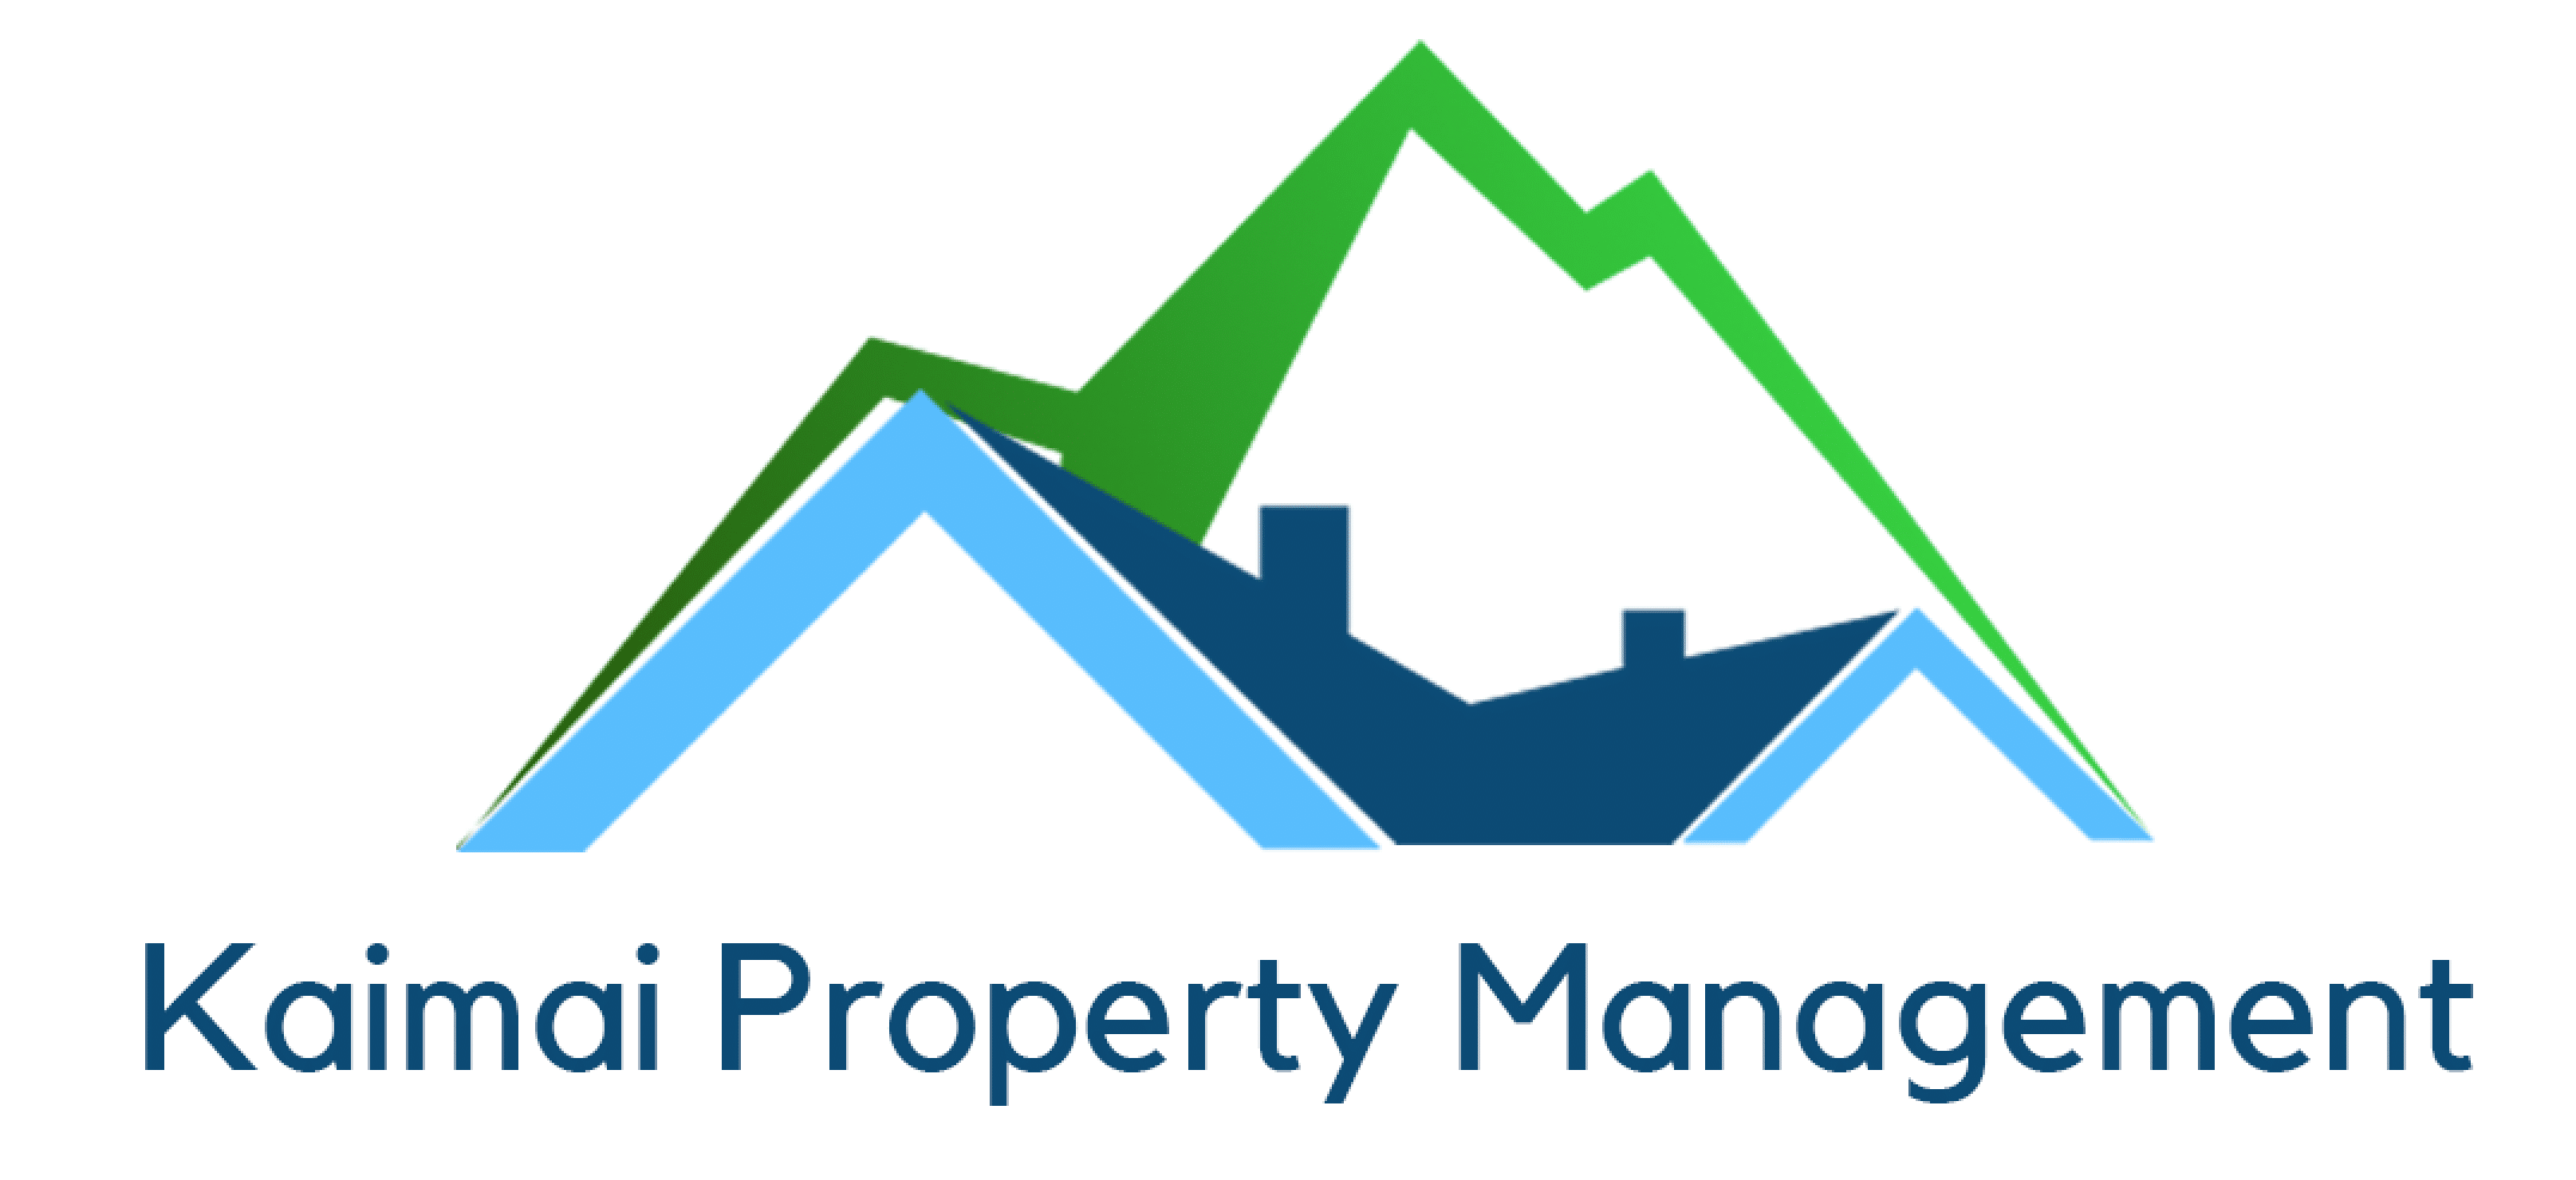 Kaimai Property Management